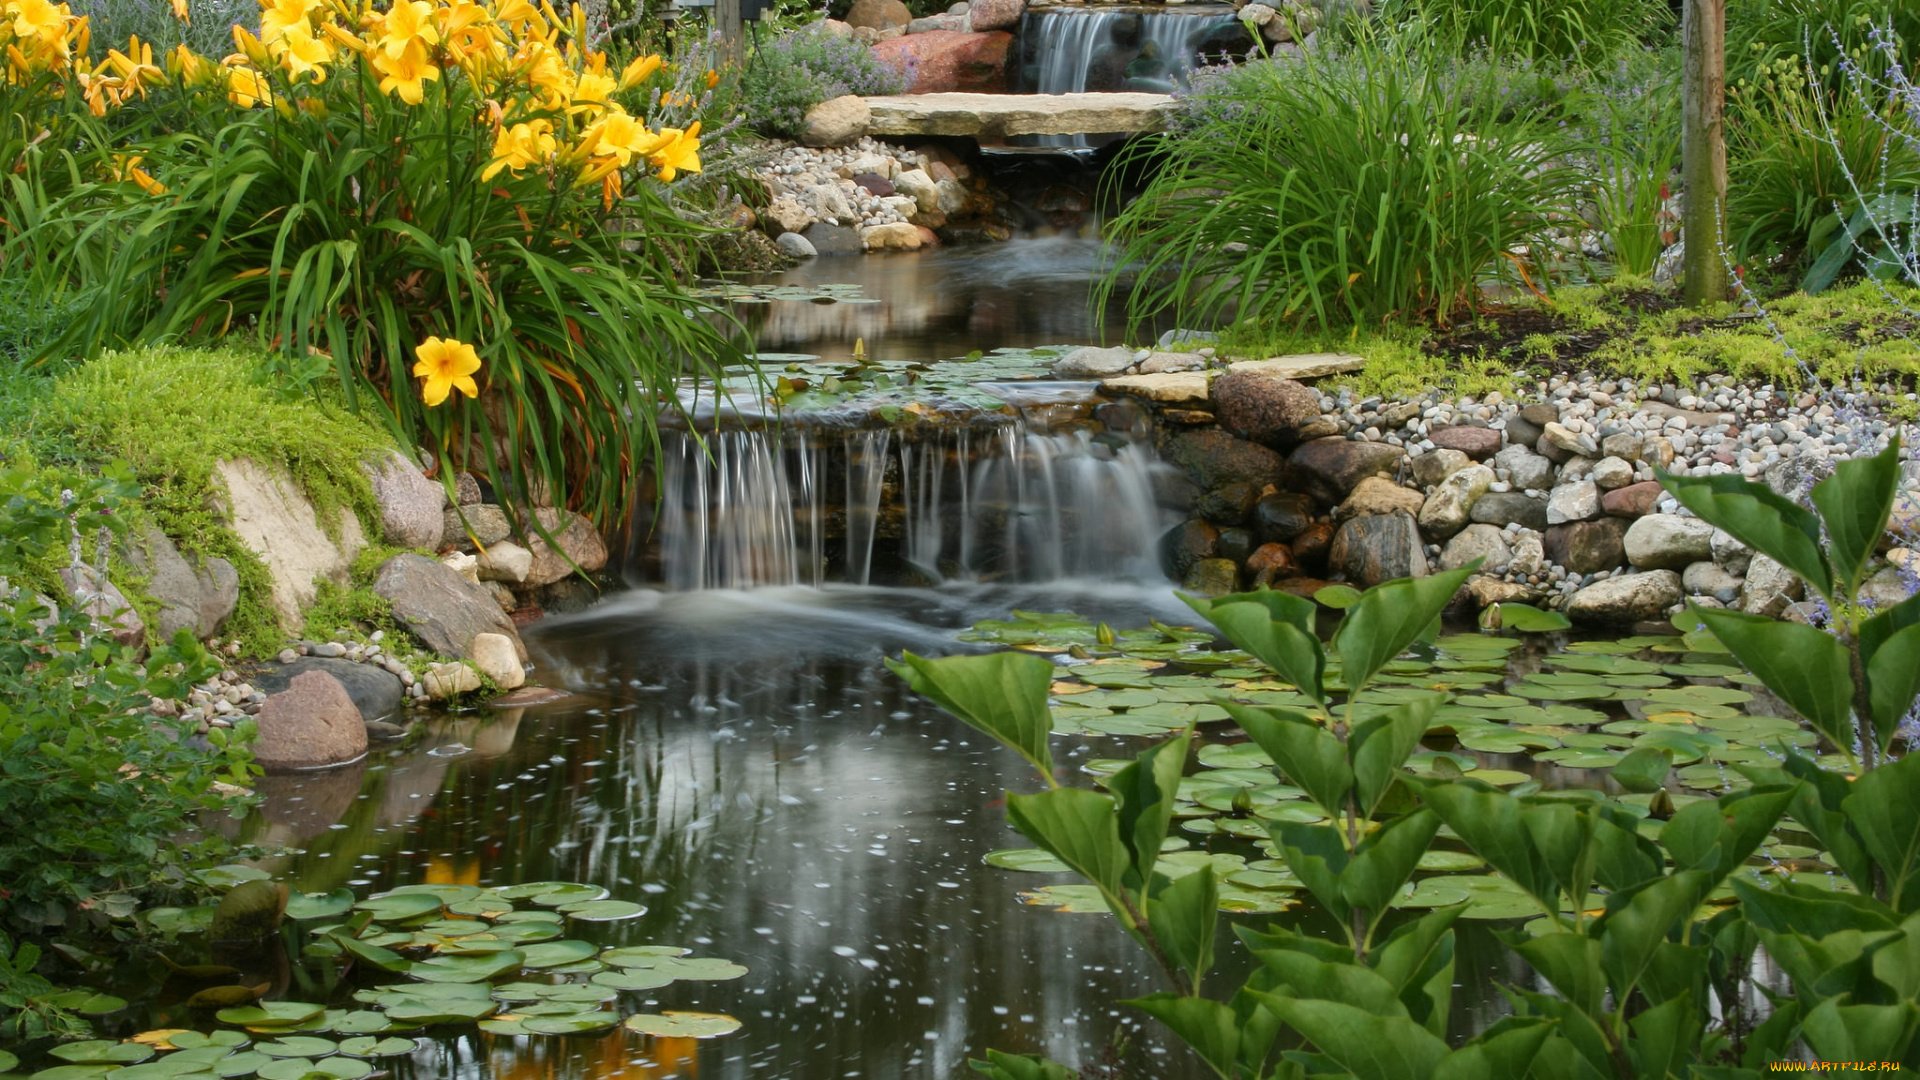 Цветочный пруд 22. Каскад искусственный водопад. Каскад прудов реки Крапивна. Ландшафтный парк Шмелевский ручей. Прудики с ручейком.